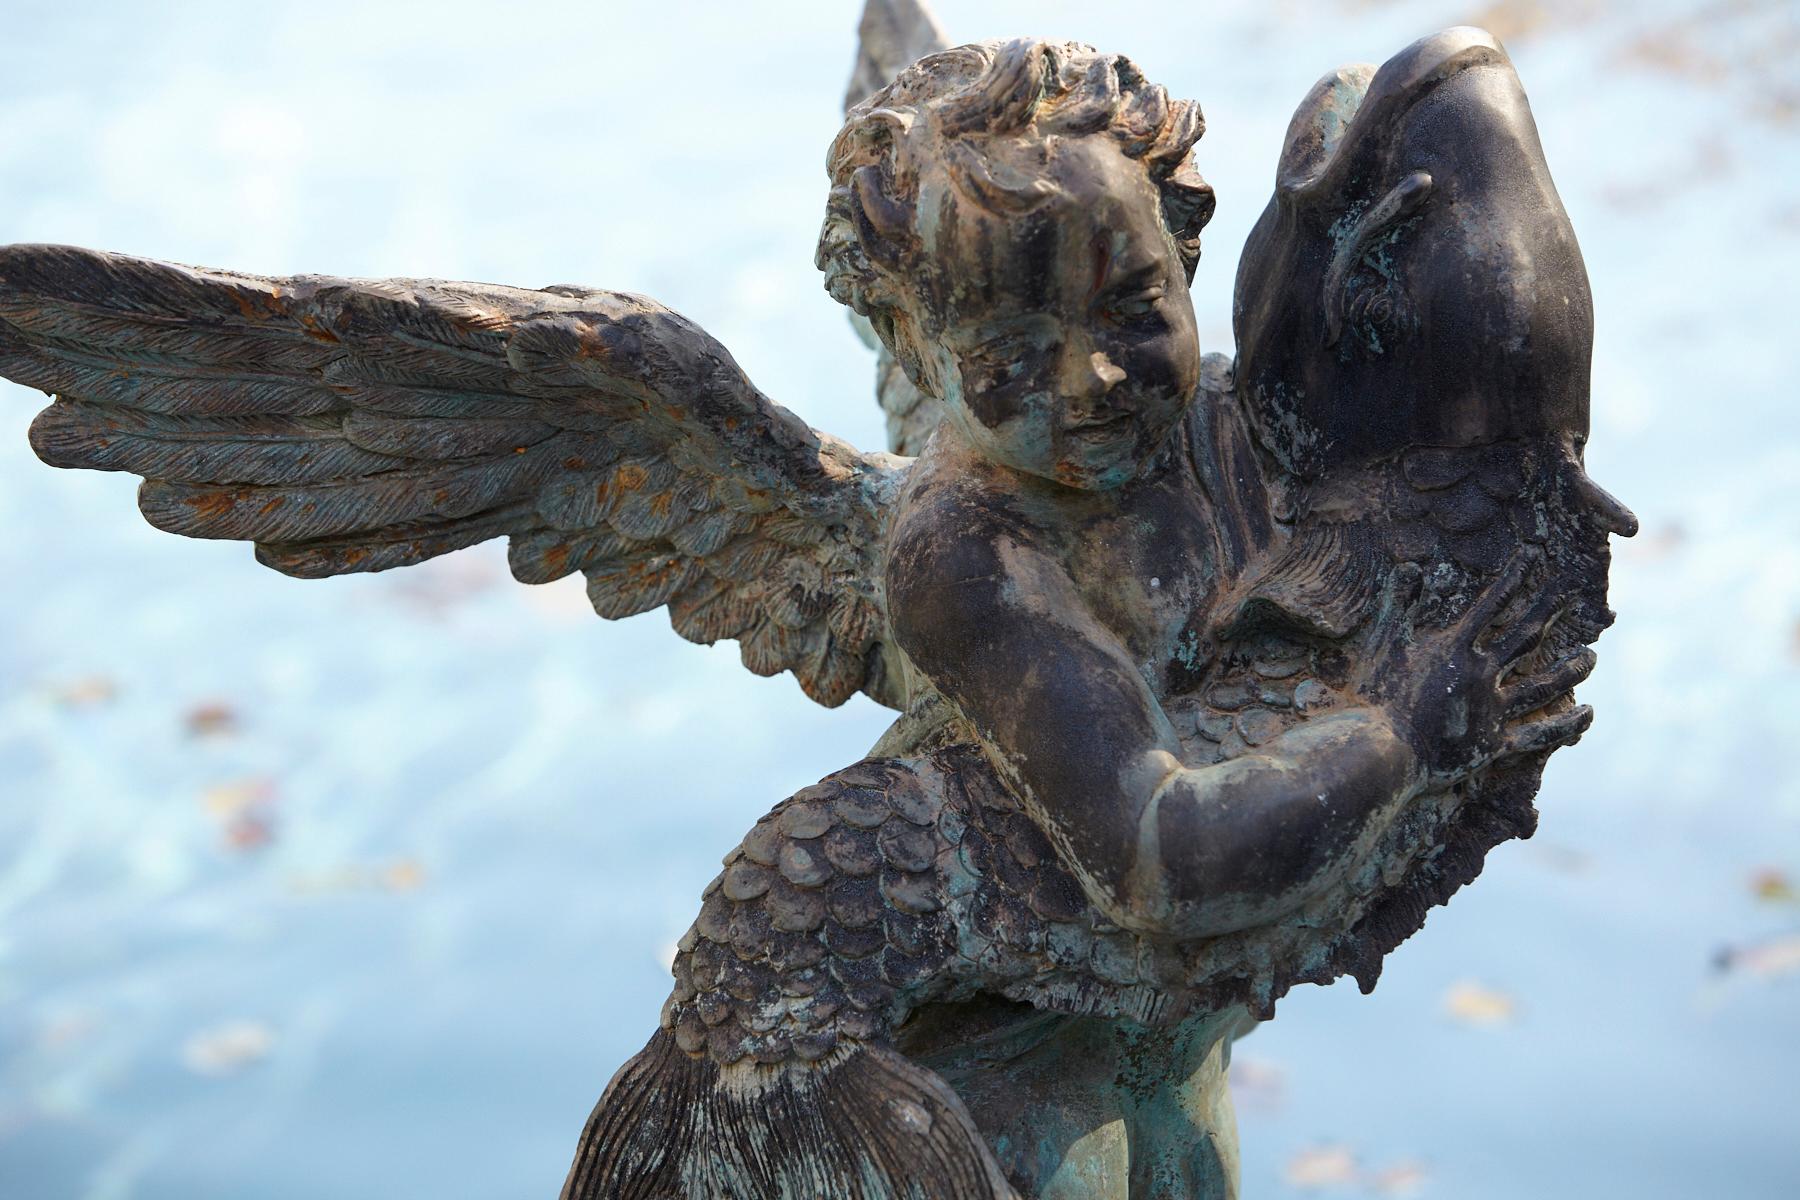 After Verrocchio, Detailed Bronze Water Garden Statue of Cherub and Fish, 1940s 10